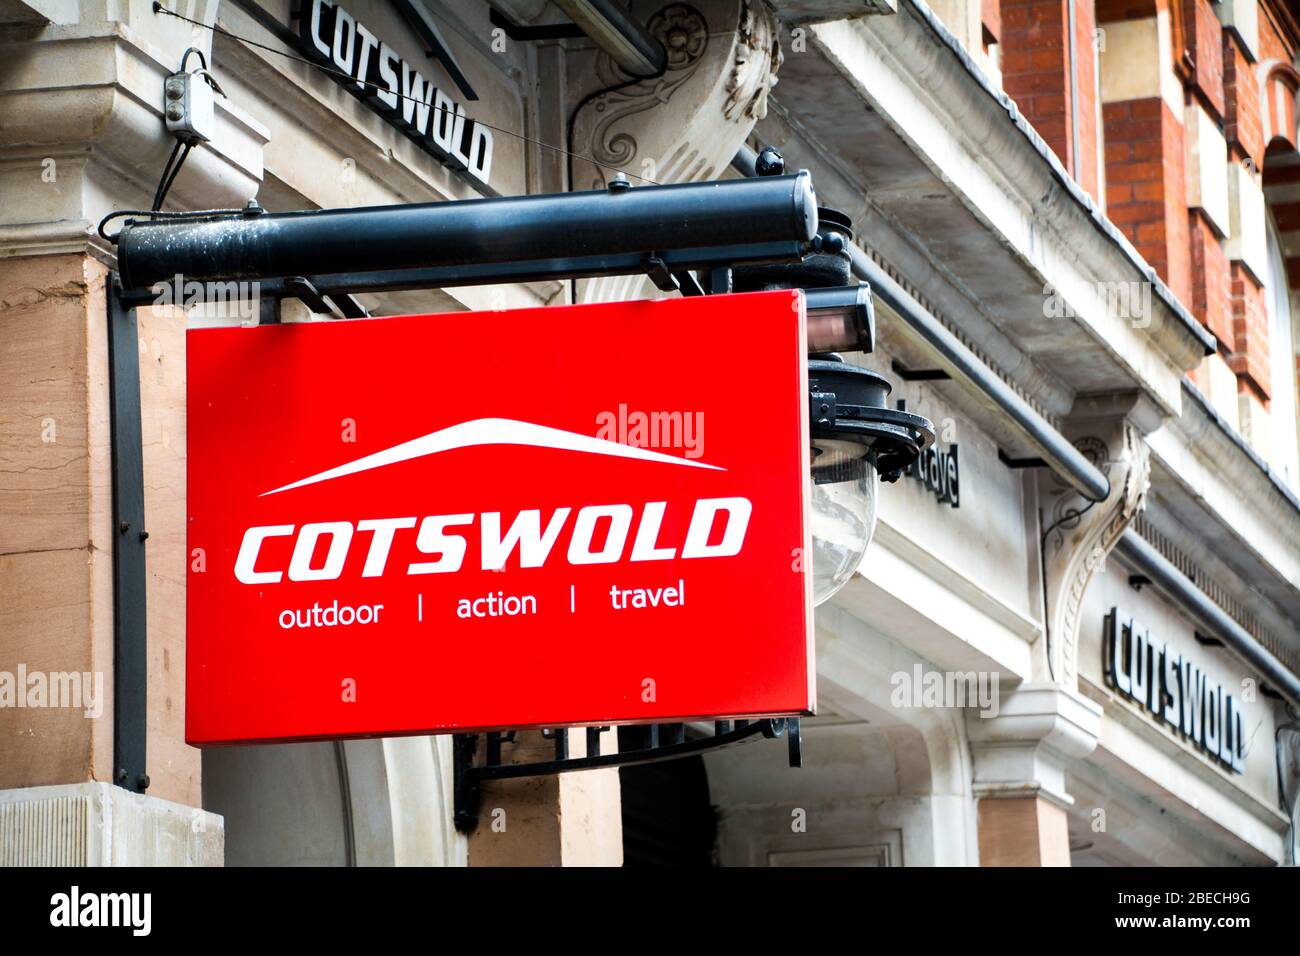 LONDON - MÄRZ 2019: Cotswold Store Exterior Signage, eine große britische Outdoor-Mode und Ausrüstung Marke Stockfoto